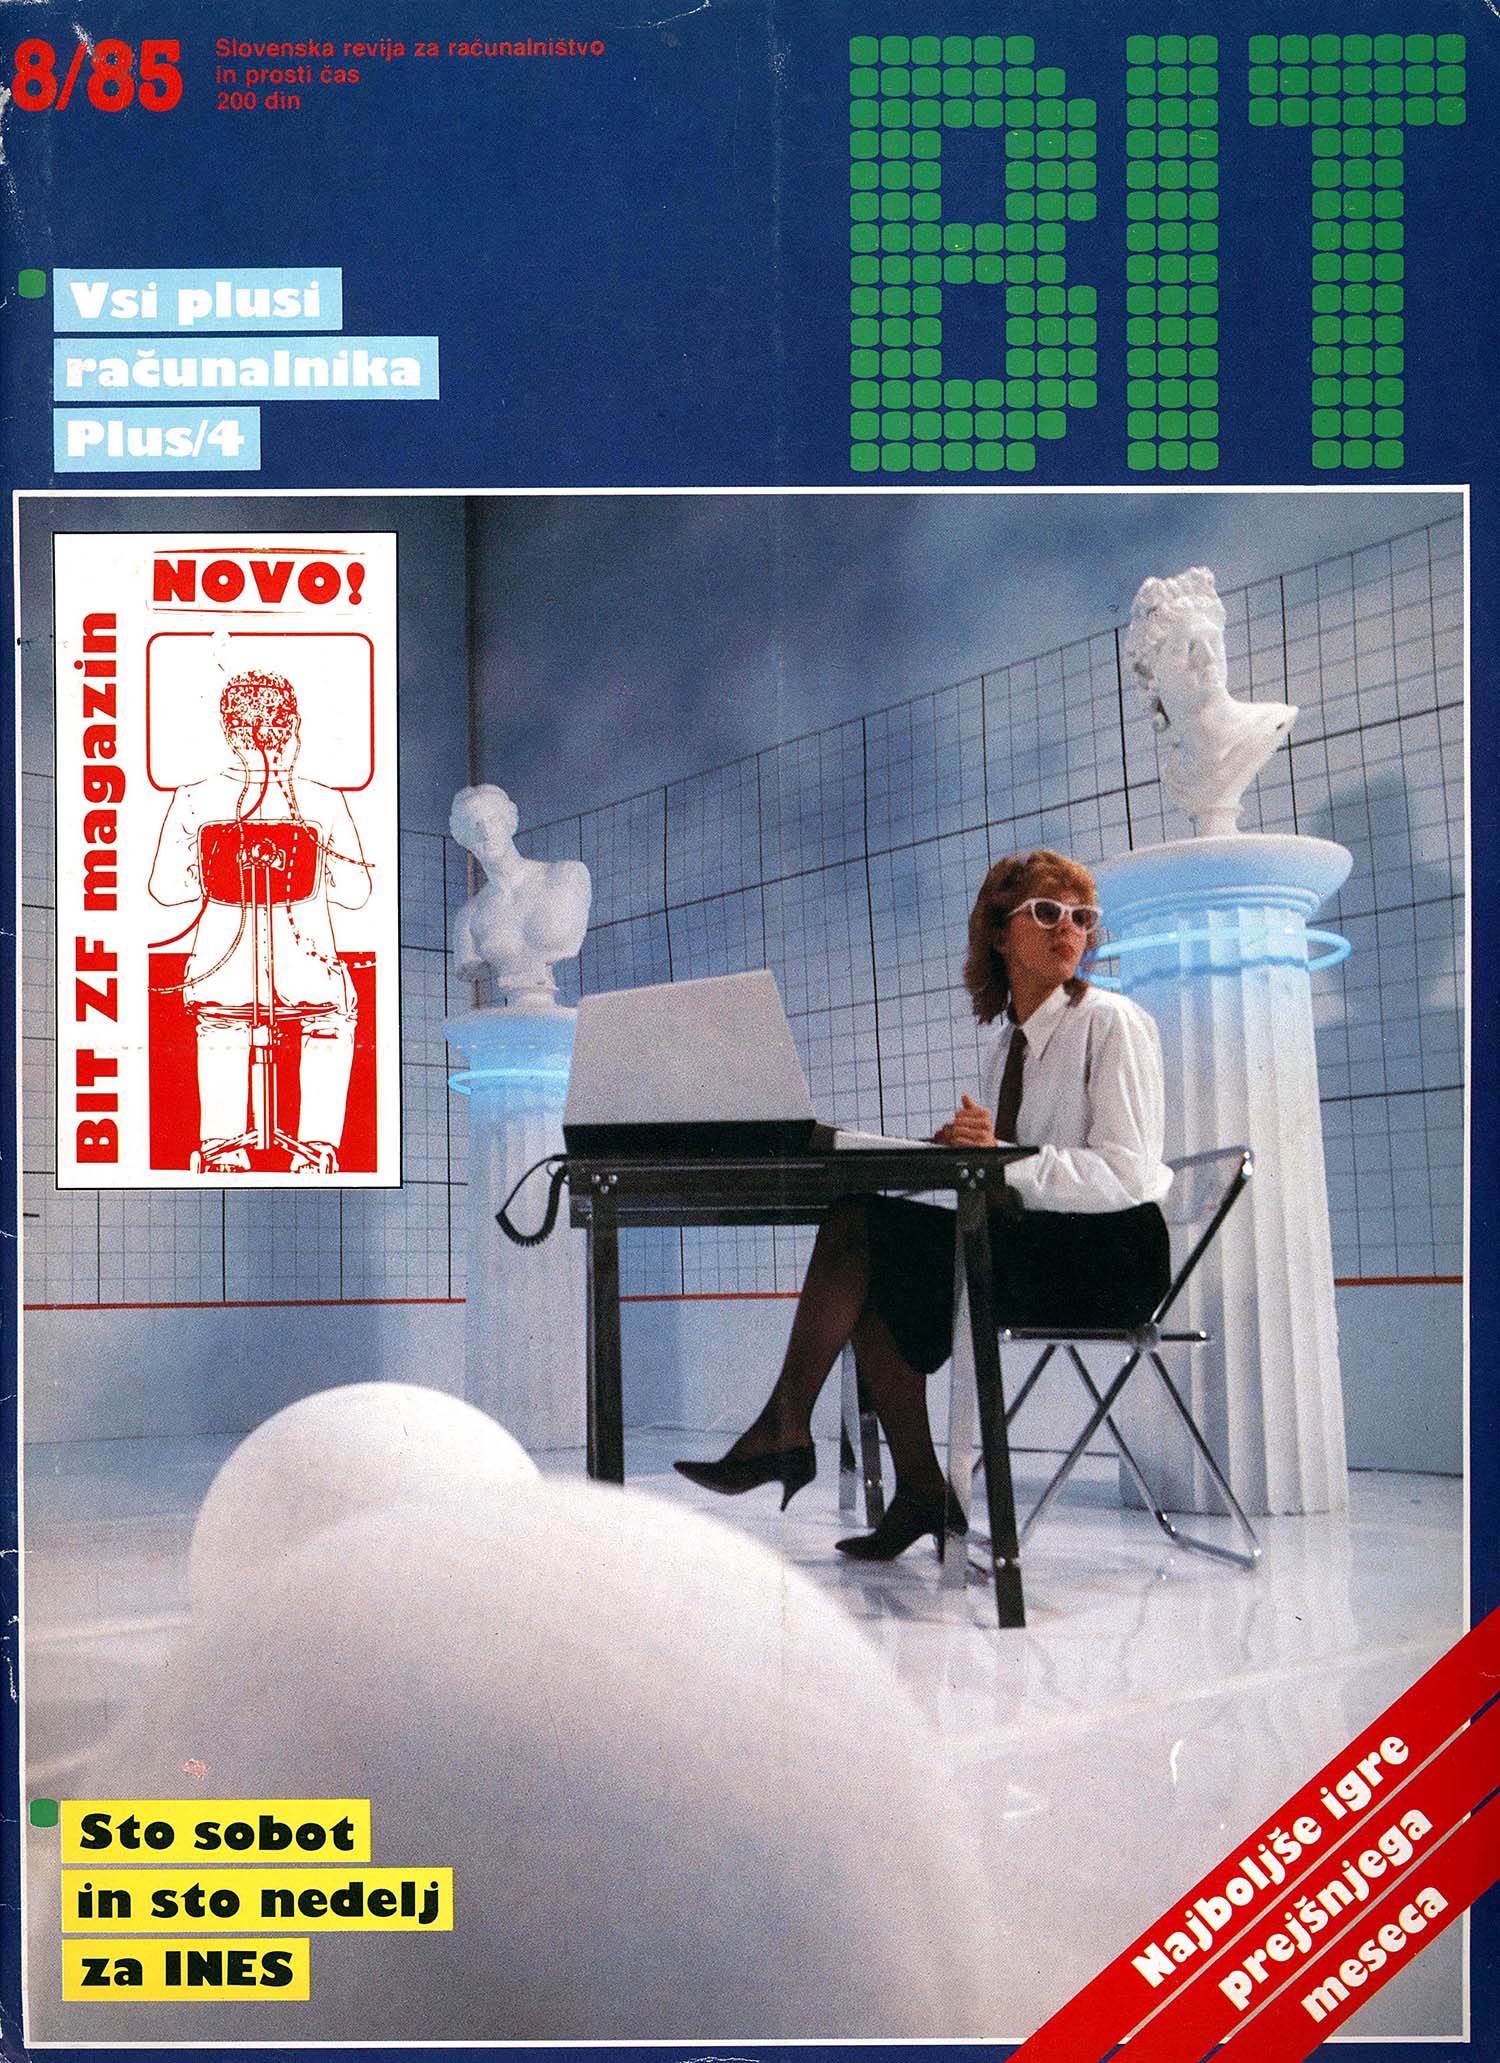 Ordinateur de Couverture de Magazine de Filles des années 1970 et les années 80